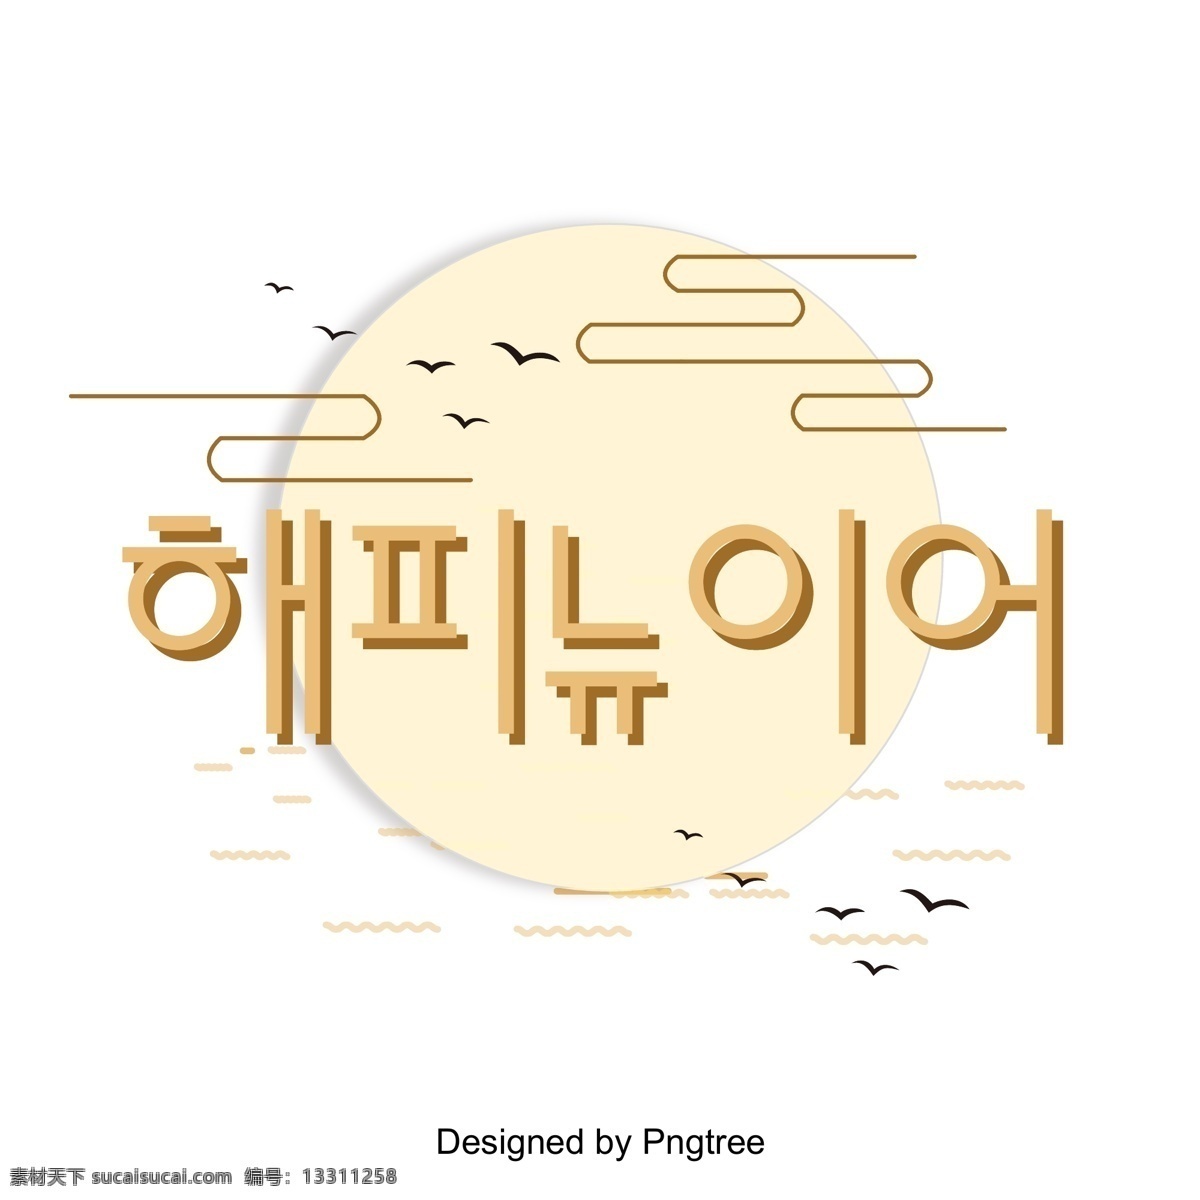 新 年 原型 三维 渐进式 传统 字体 新的一年啊 黄色 圆 立体 进步 韩文 现场 快乐 向量 几何